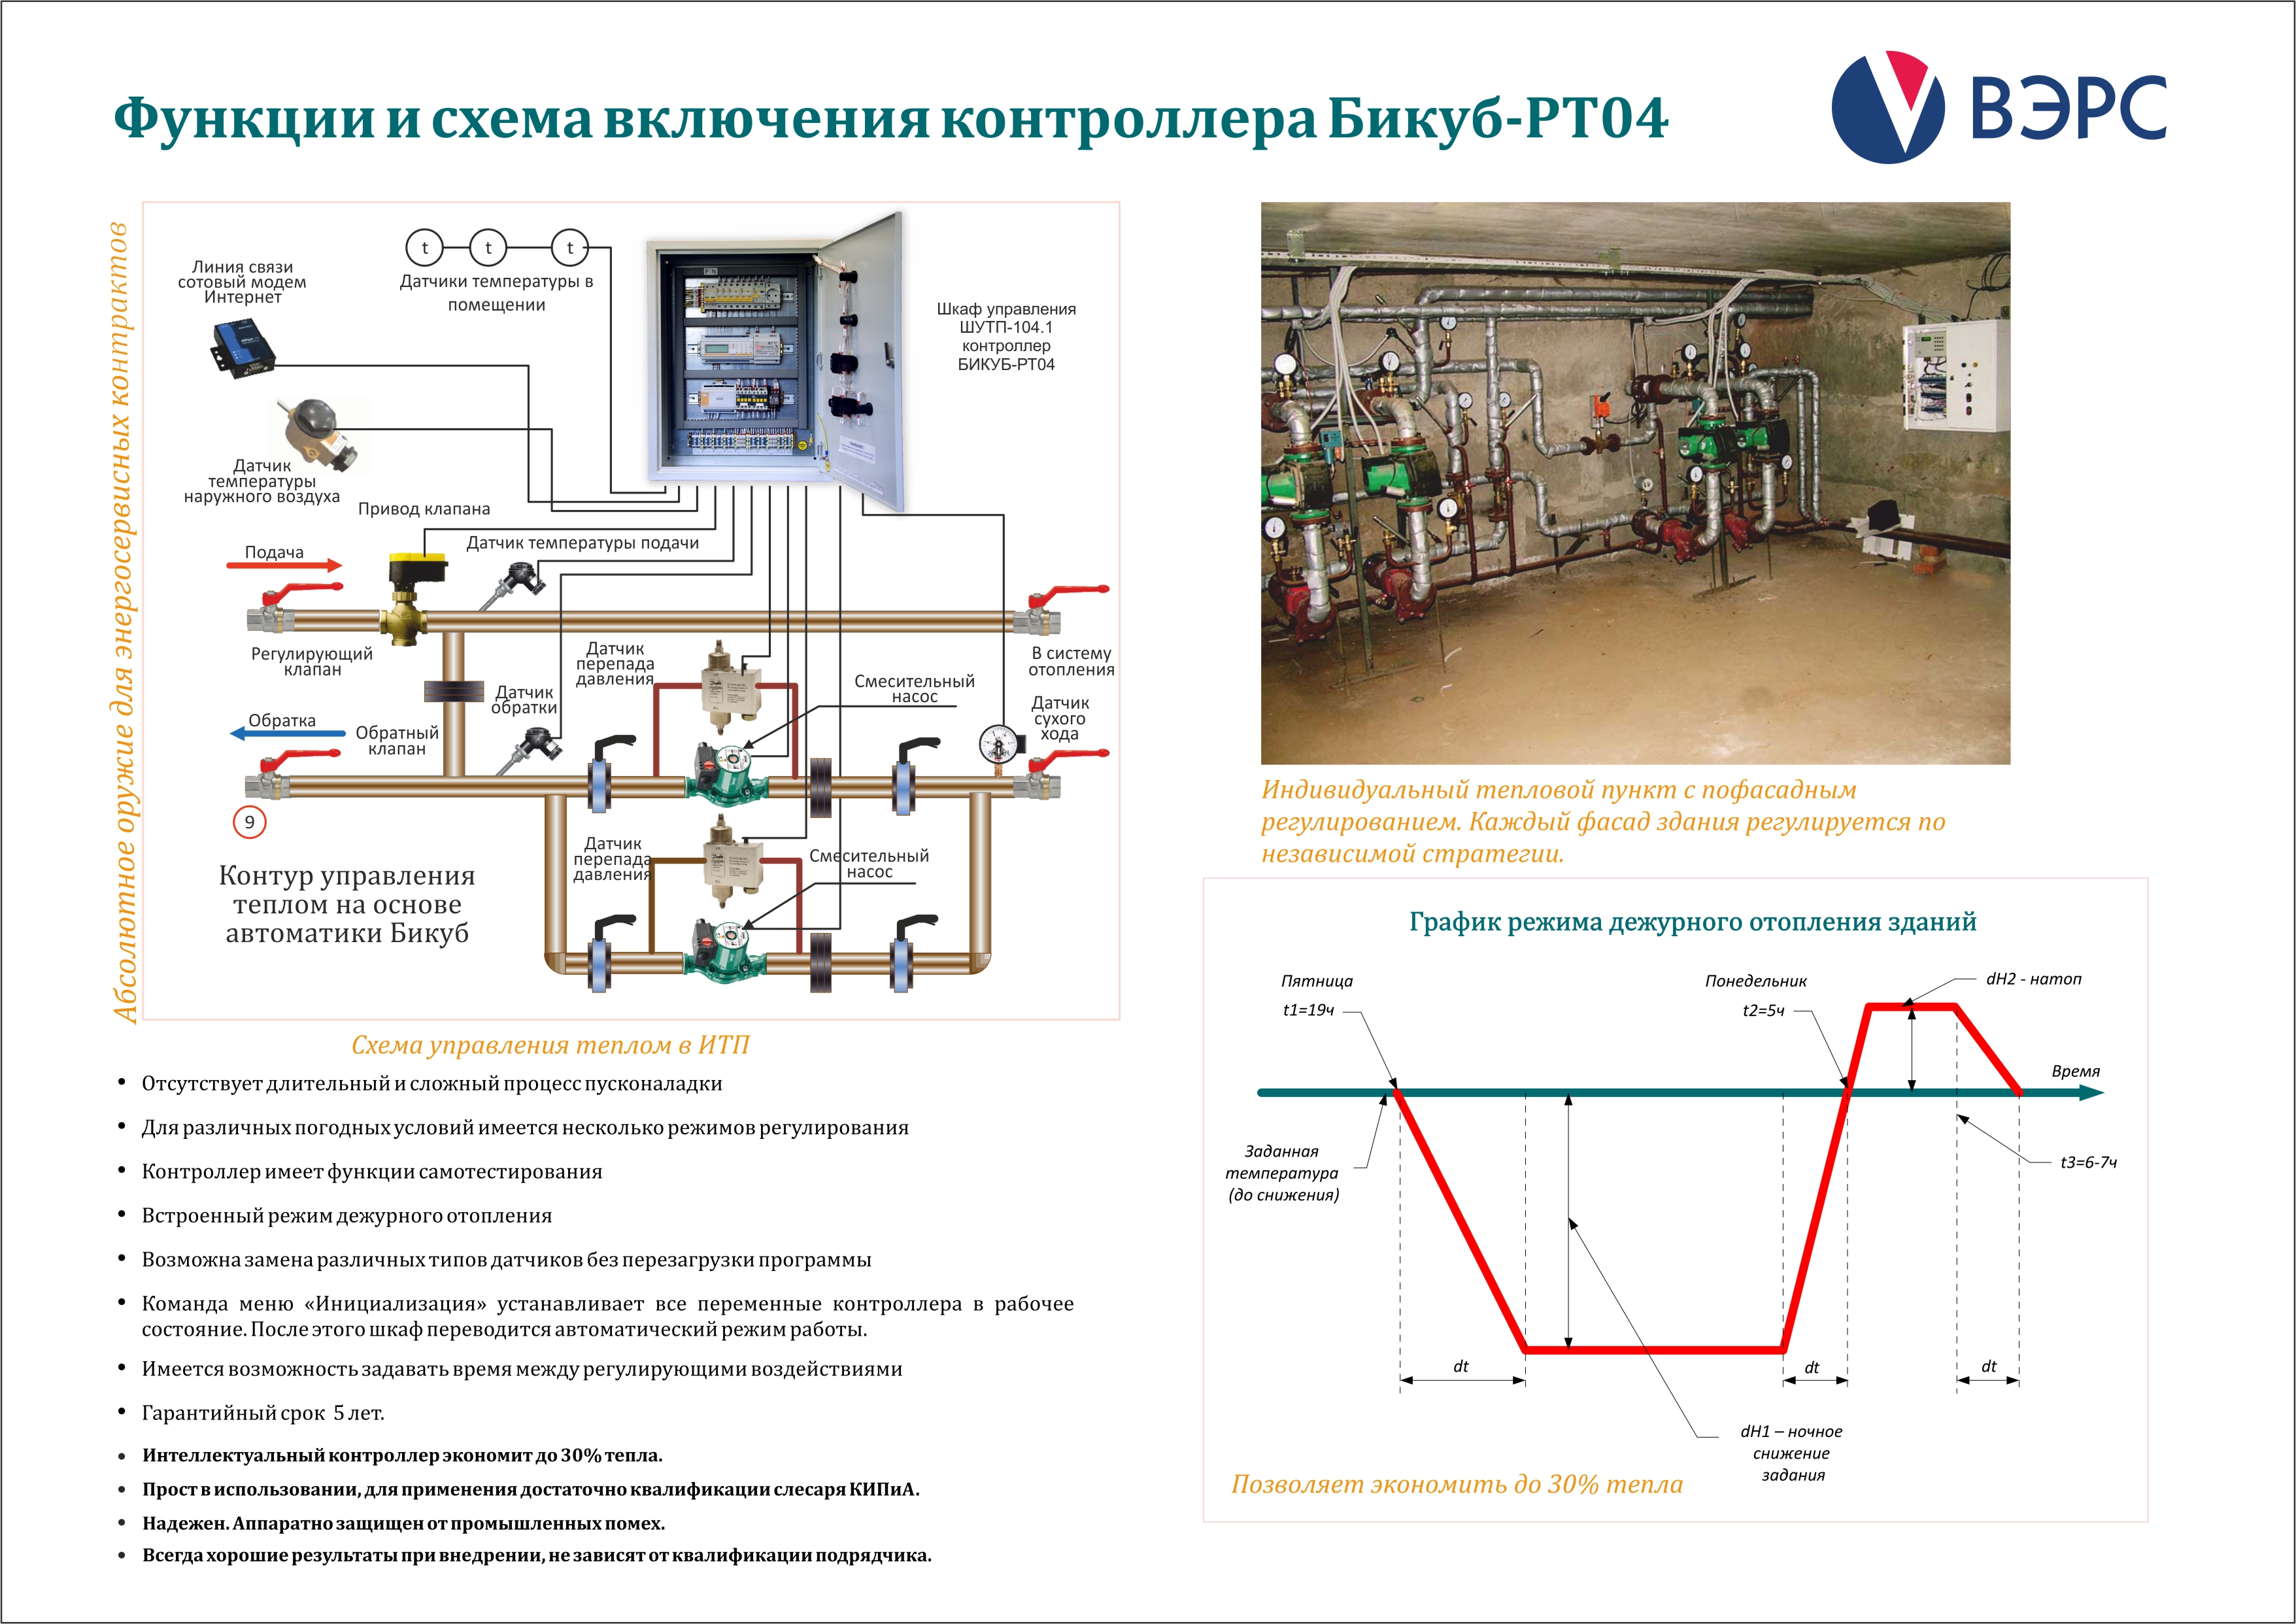 Описание систем автоматизации и диспетчеризации процесса регулирования отопления